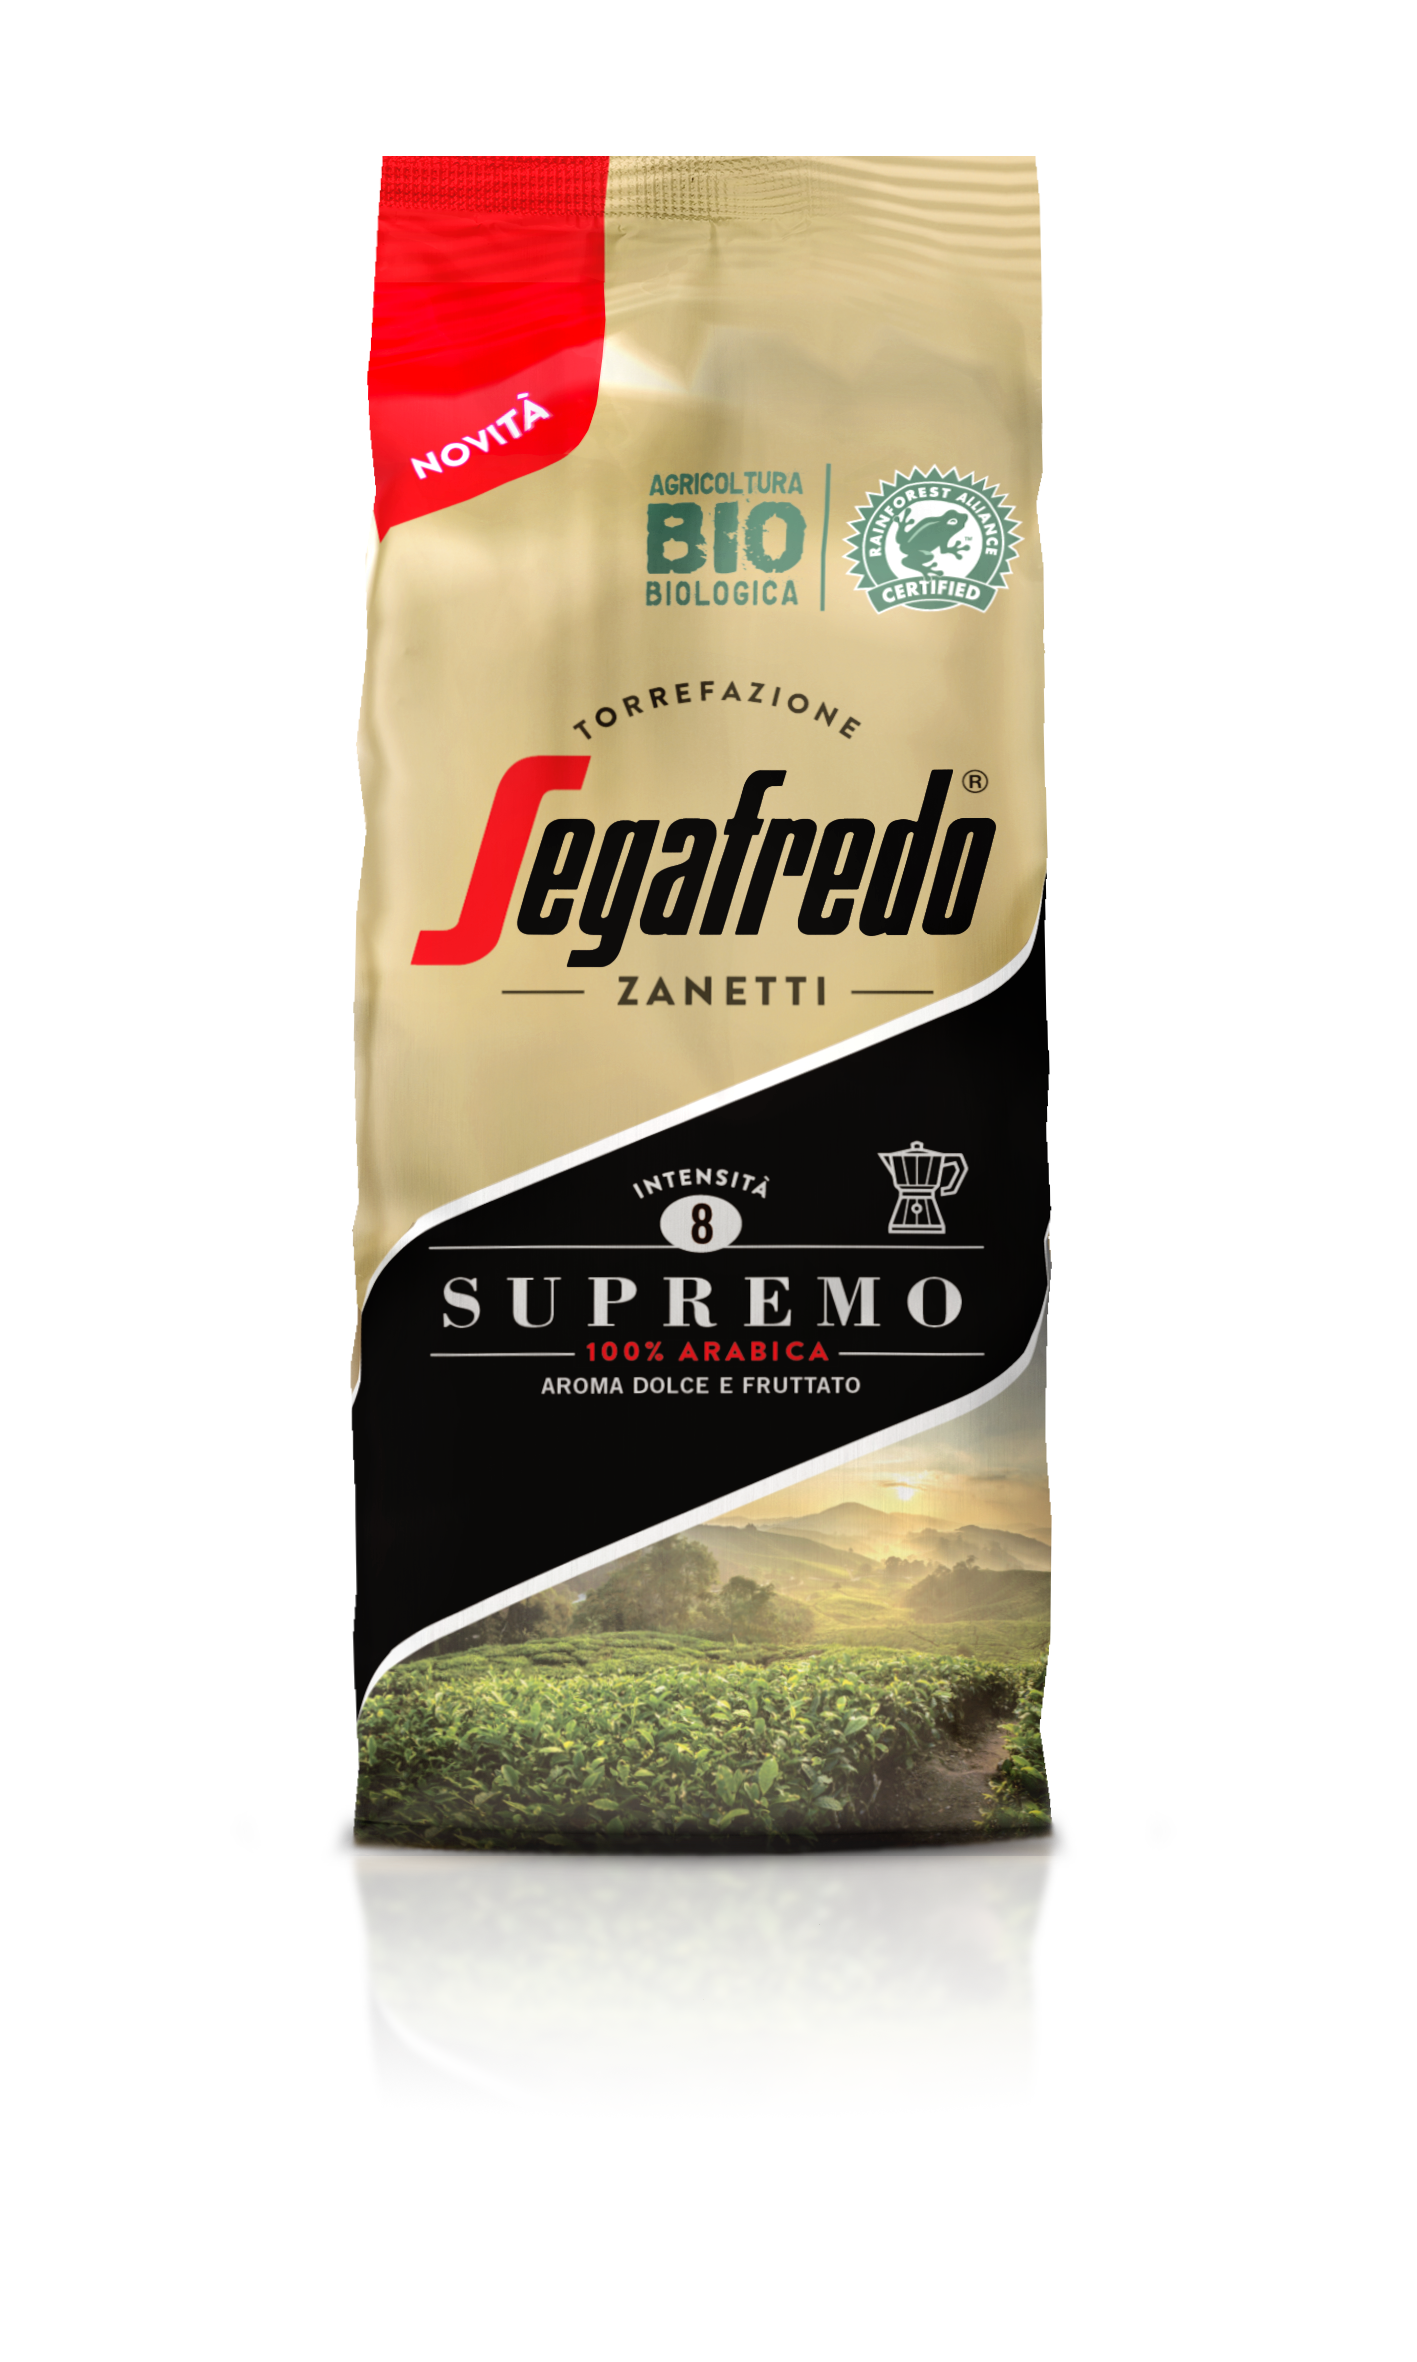 SEGAFREDO ZANETTI - SUPREMO 100% ARABICA GROUND COFFEE